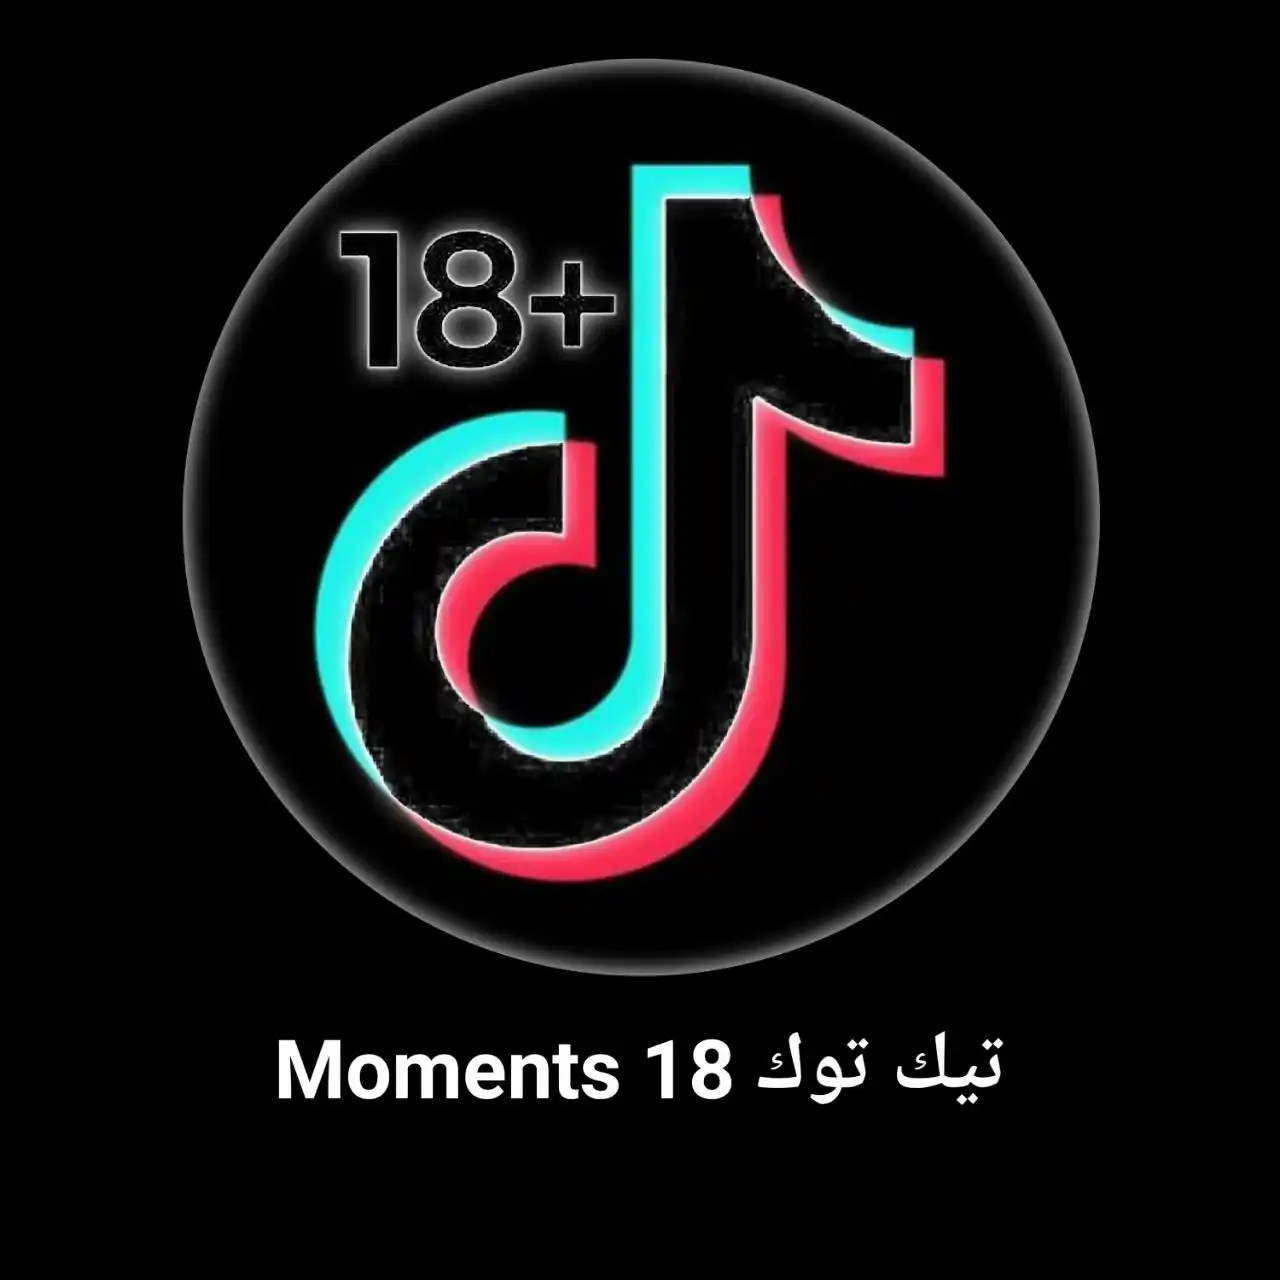 تنزيل برنامج Moments تيك توك 18 للايفون والاندرويد سوق التطبيقات